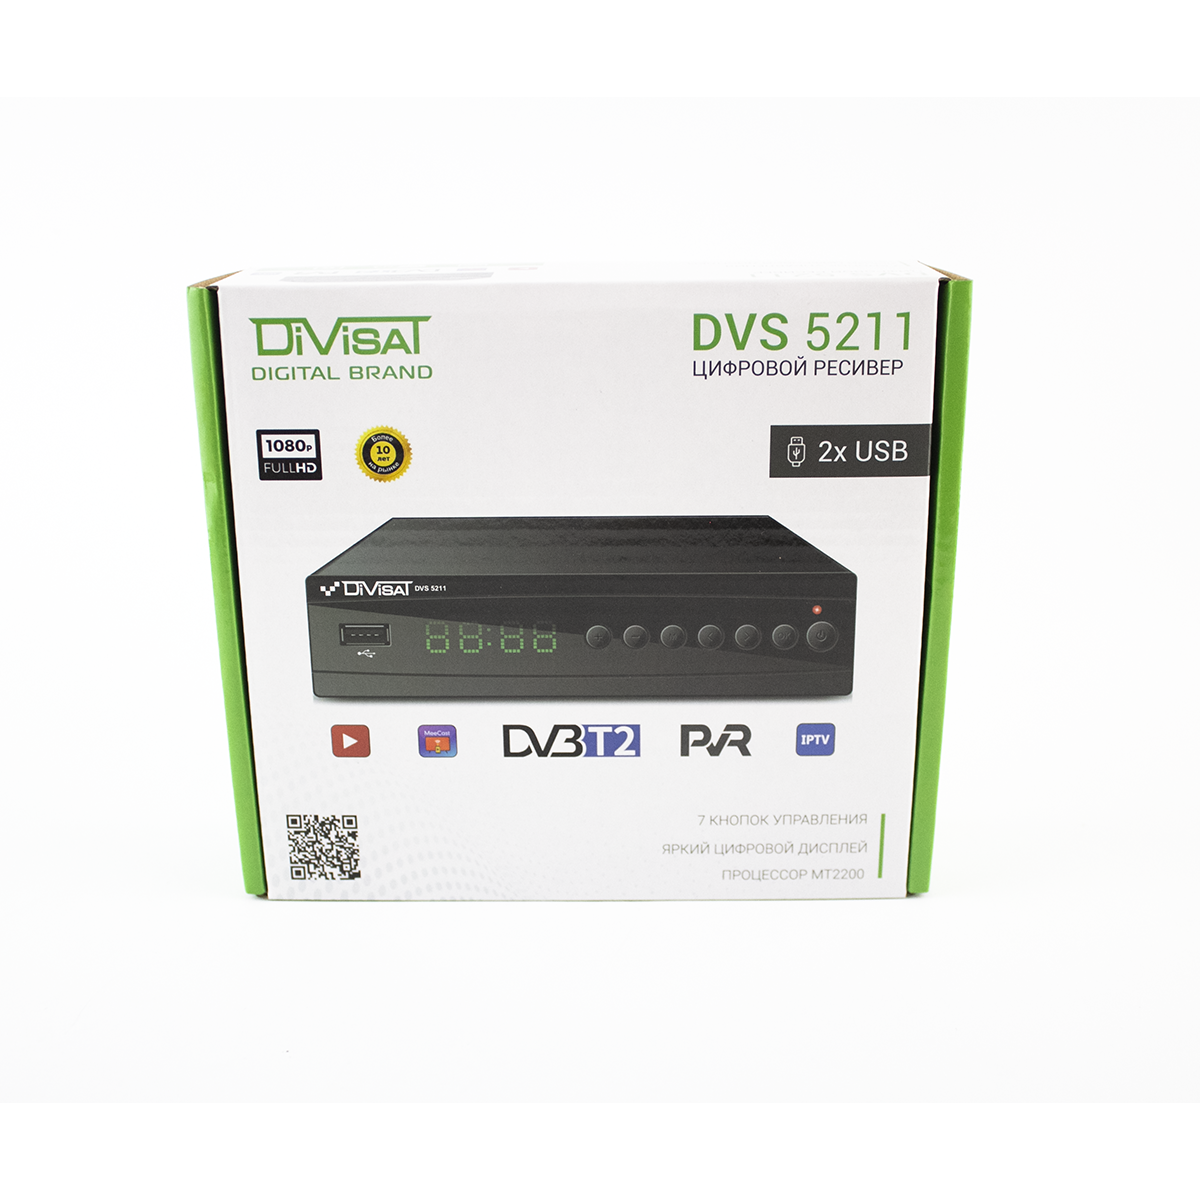 DVB-T/T2/C DVS 5211 DIVISAT -   